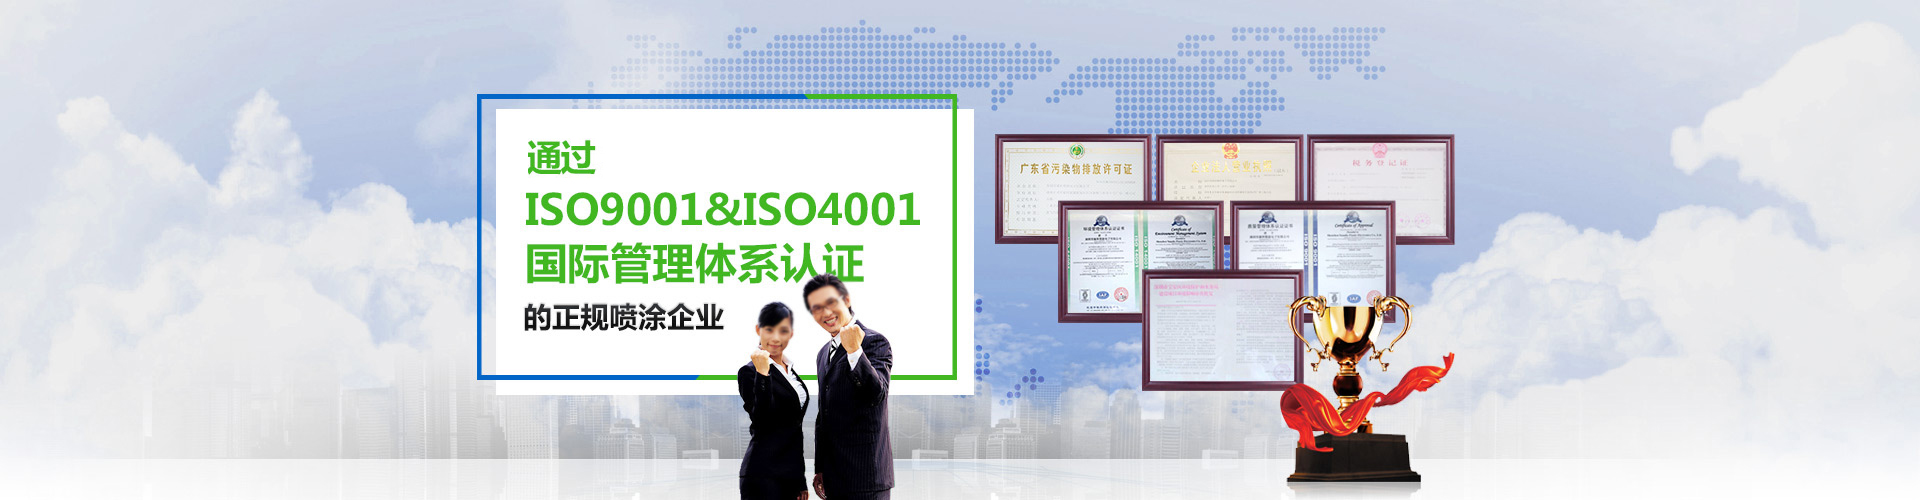 国内首批通过ISO9001/ISO4001国际管理体系认证的